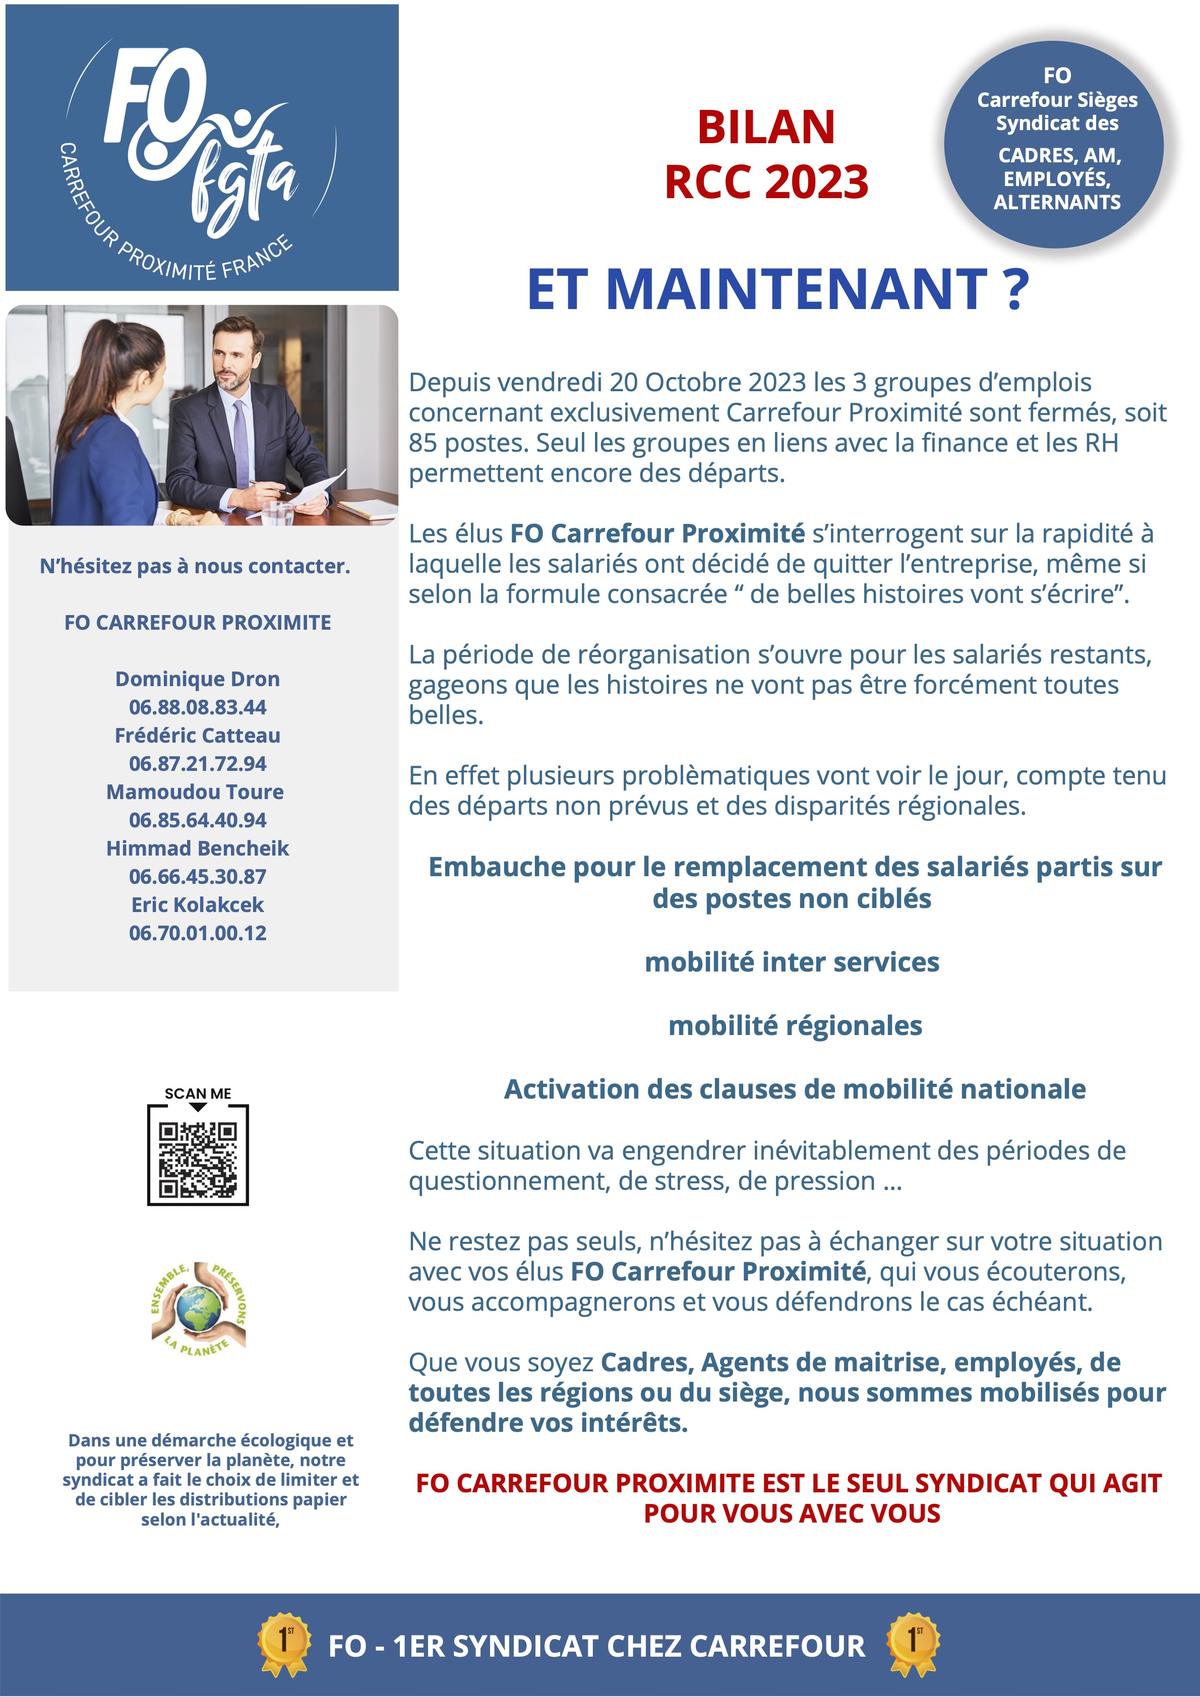 Carrefour Proximité France-bilan RCC 2023-Et maintenant?